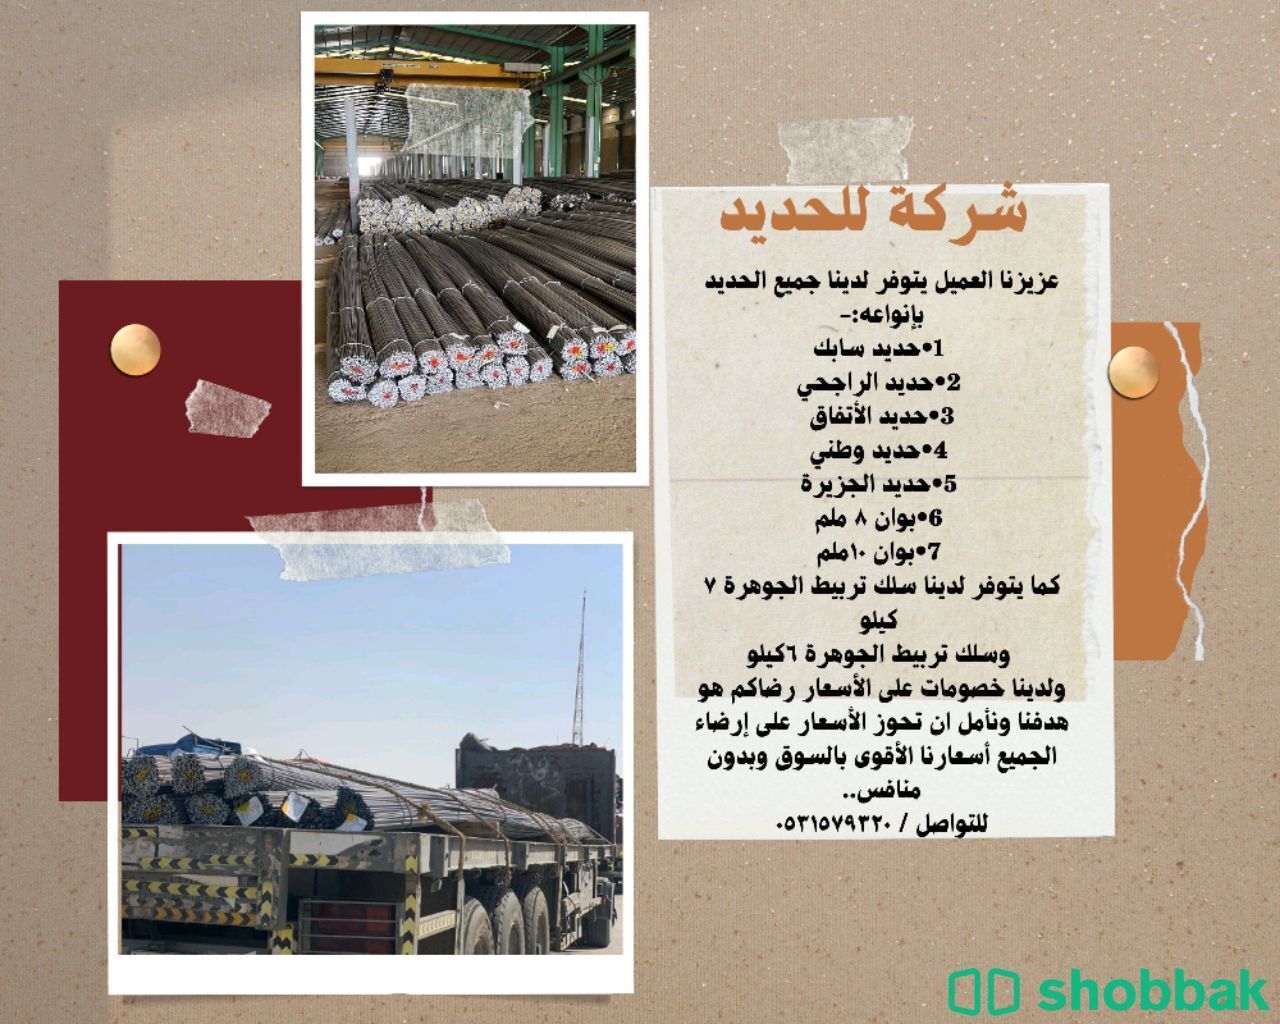 شركة للحديد Shobbak Saudi Arabia